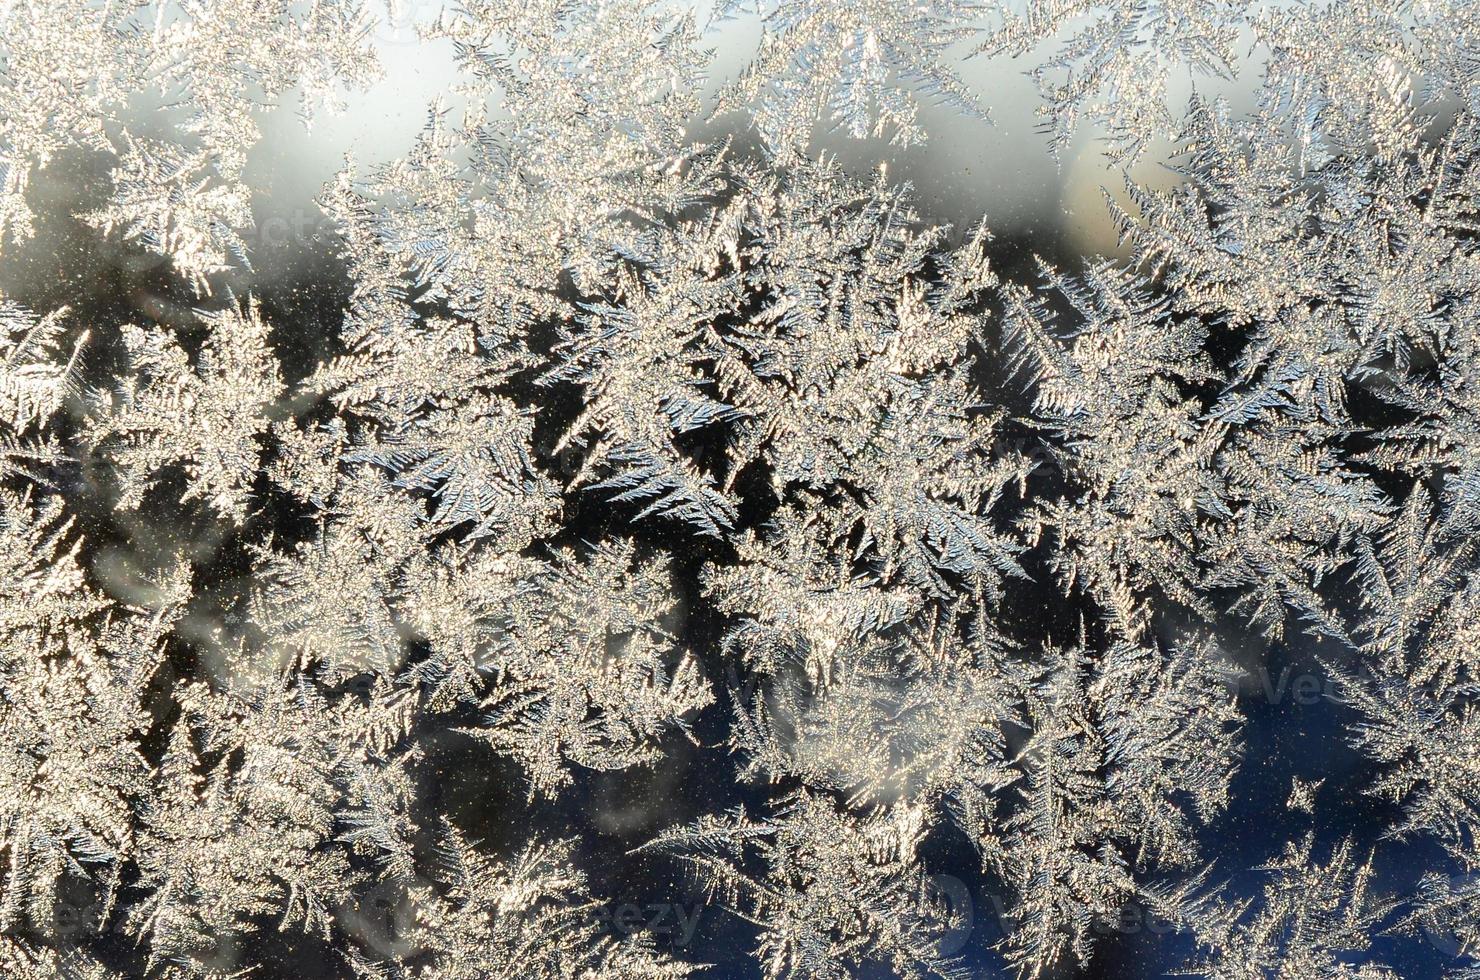 copos de nieve escarcha escarcha macro en el cristal de la ventana foto